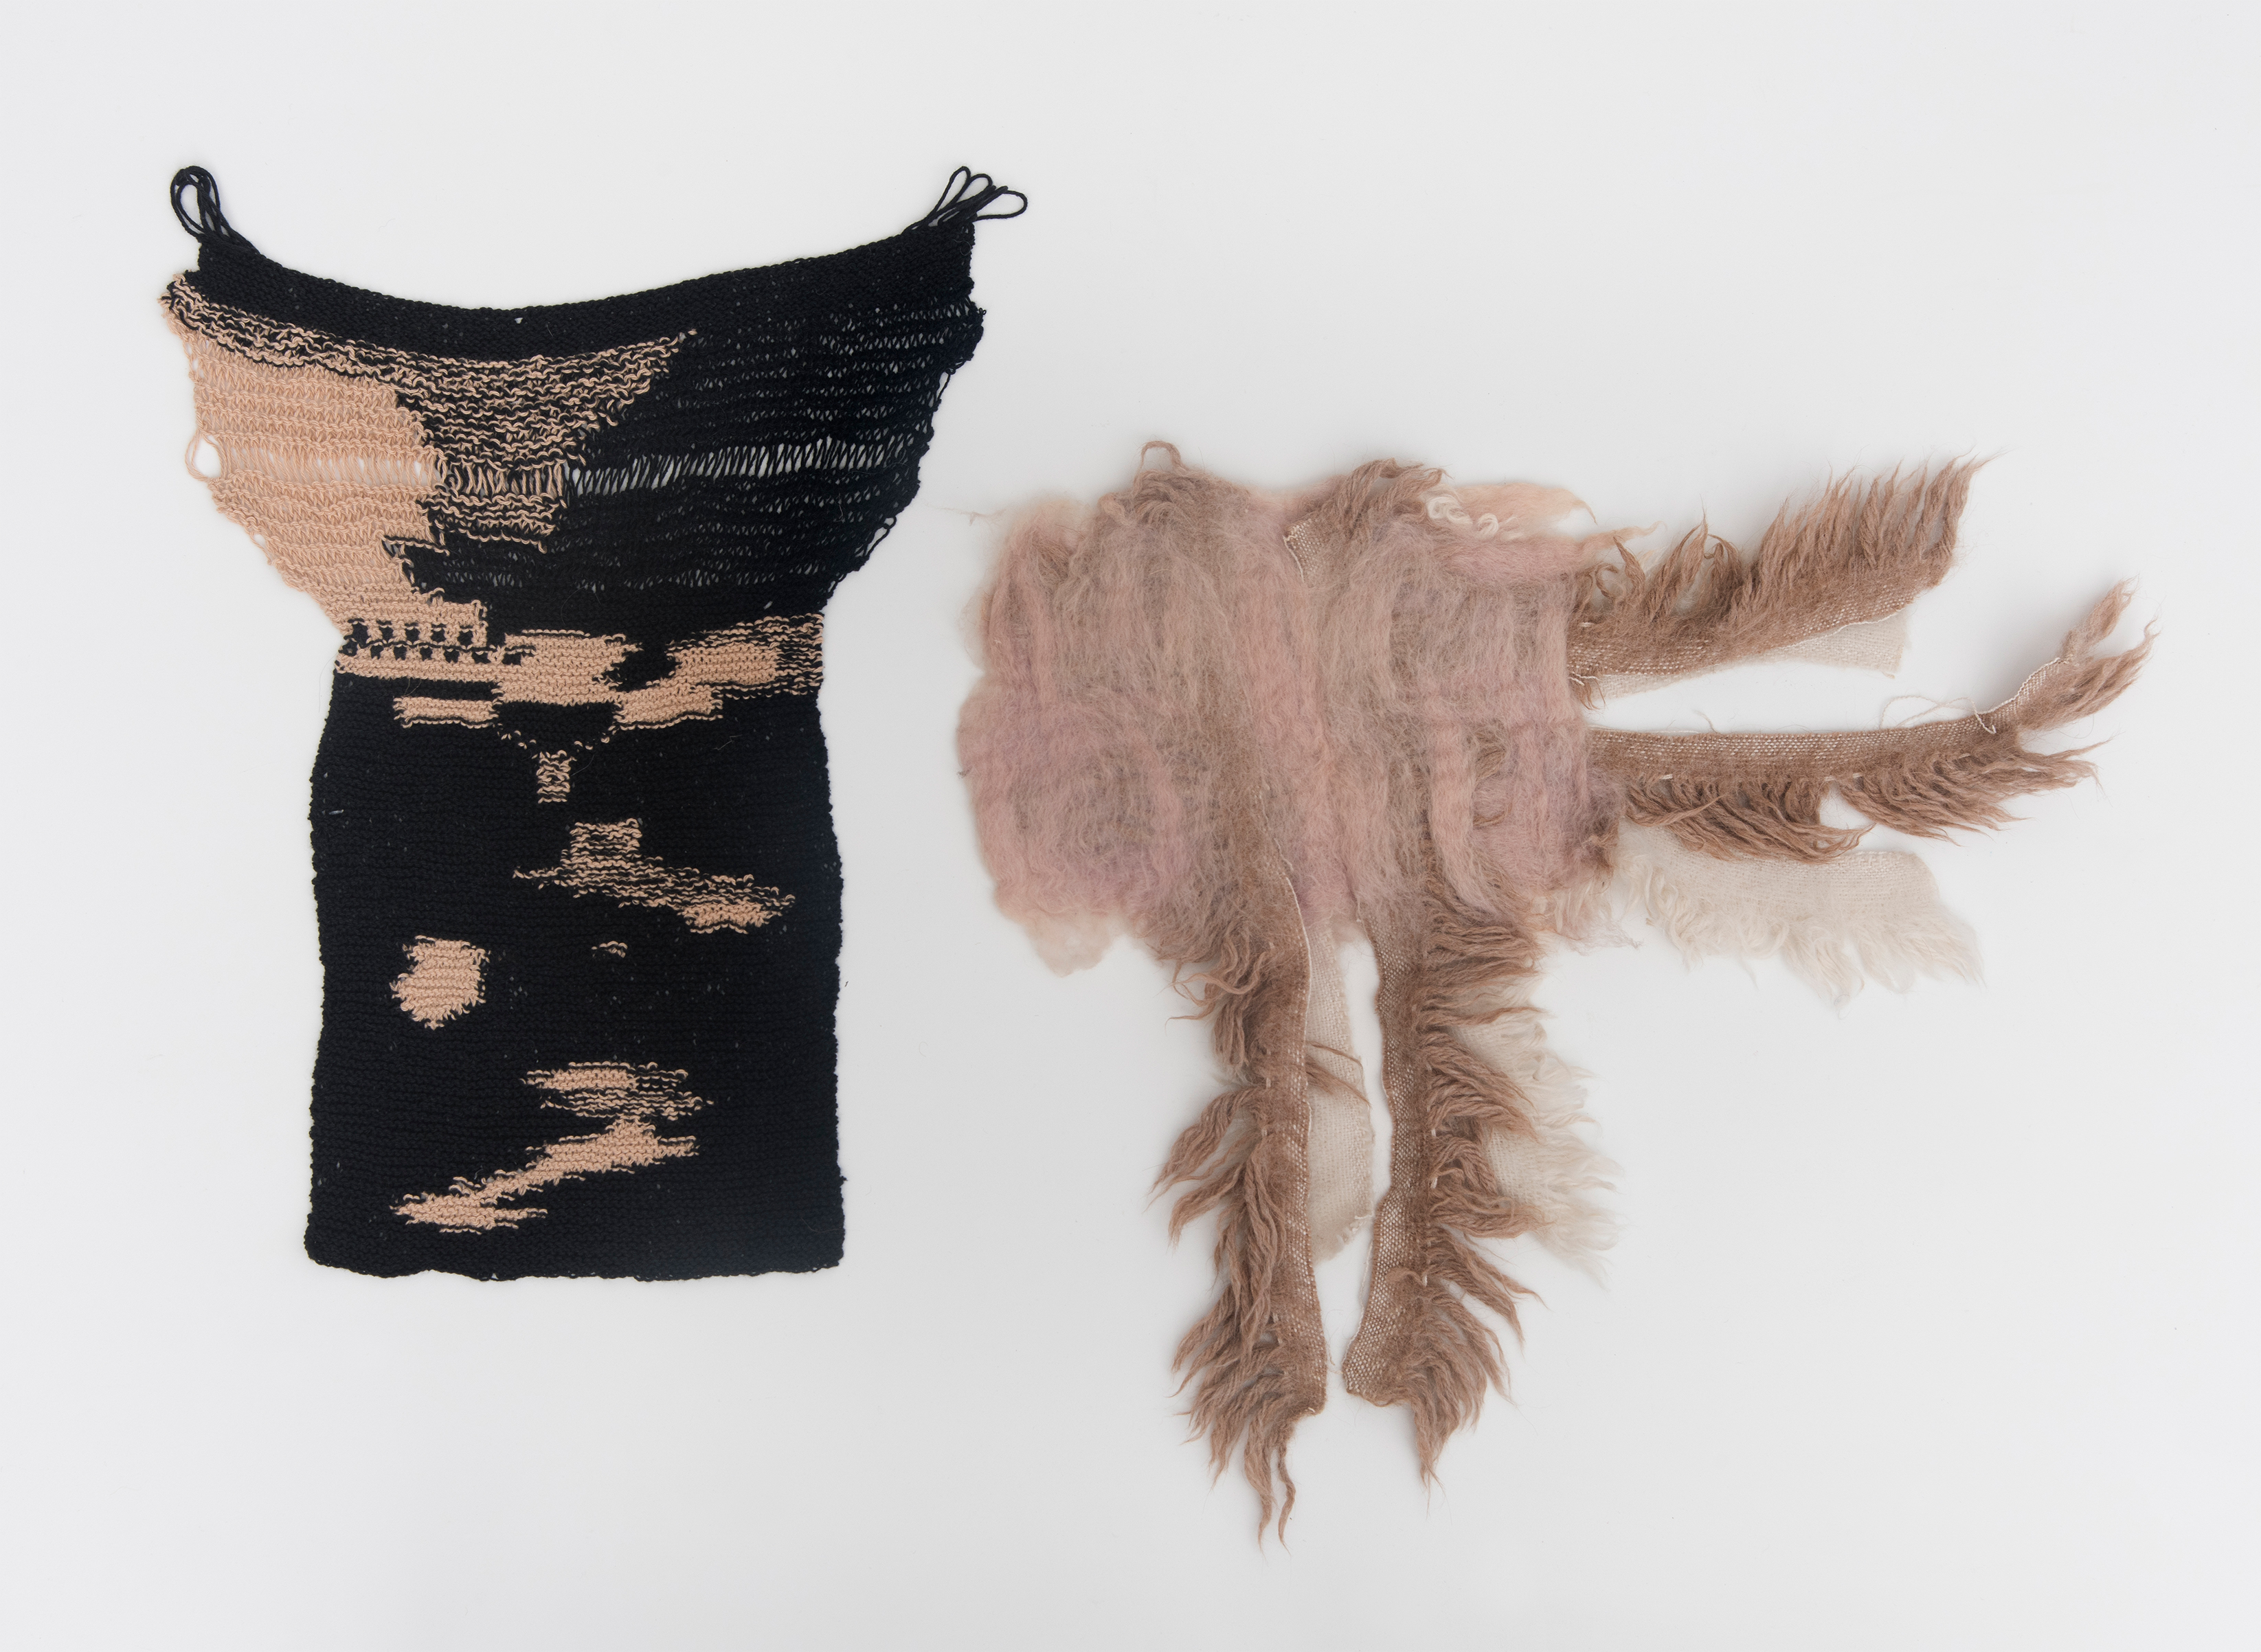 Obra de la serie Covers de Alejandra Mizrahi. Dos objetos tejidos con hilo de algodón y fieltro amasado